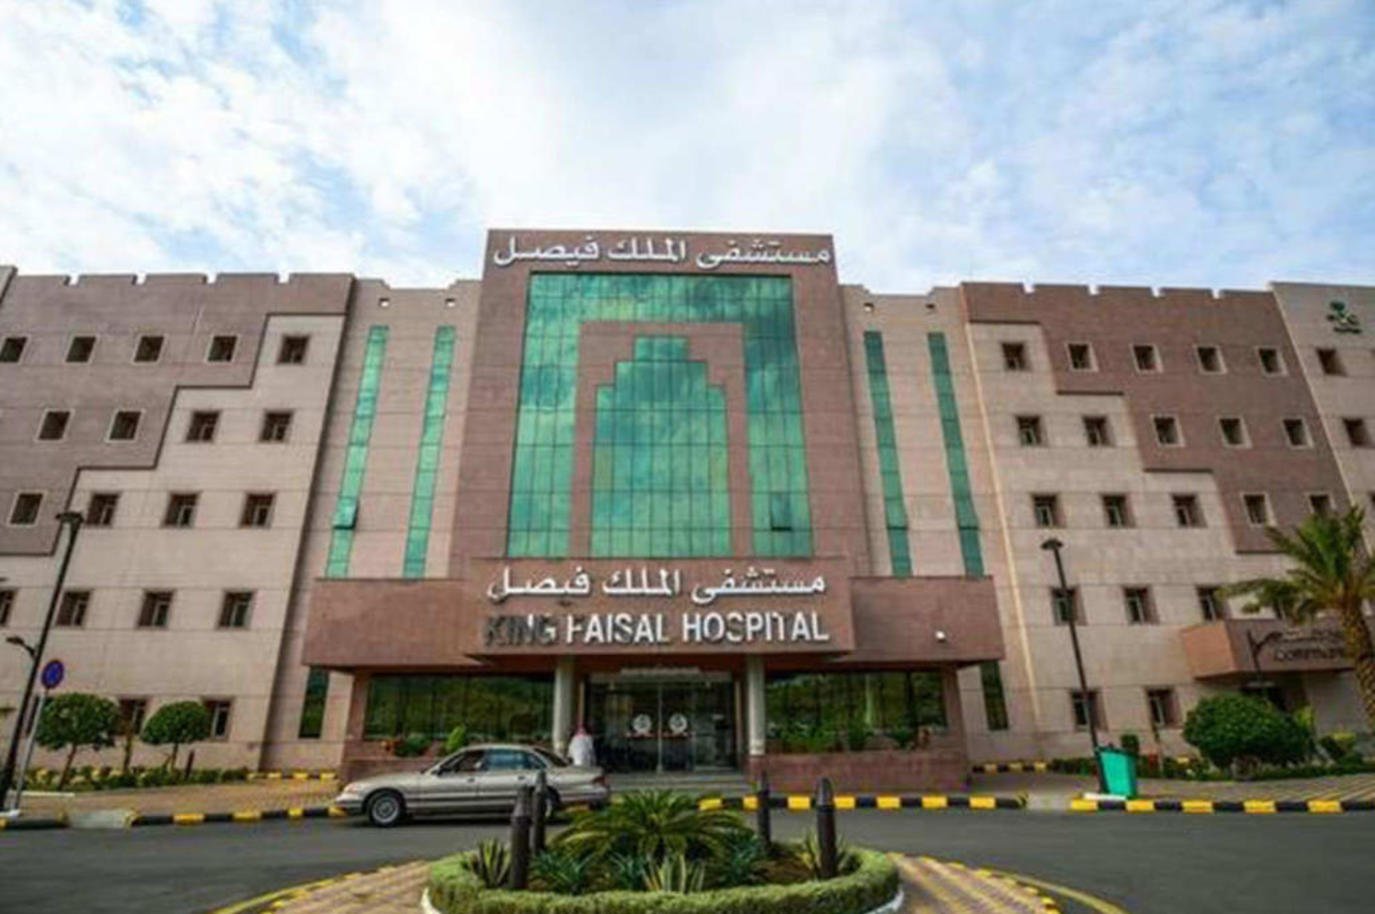 مستشفى الملك فيصل التخصصي يعلن عن توافر 197 وظيفة شاغرة لحملة الثانوية والدبلوم والبكالوريوس